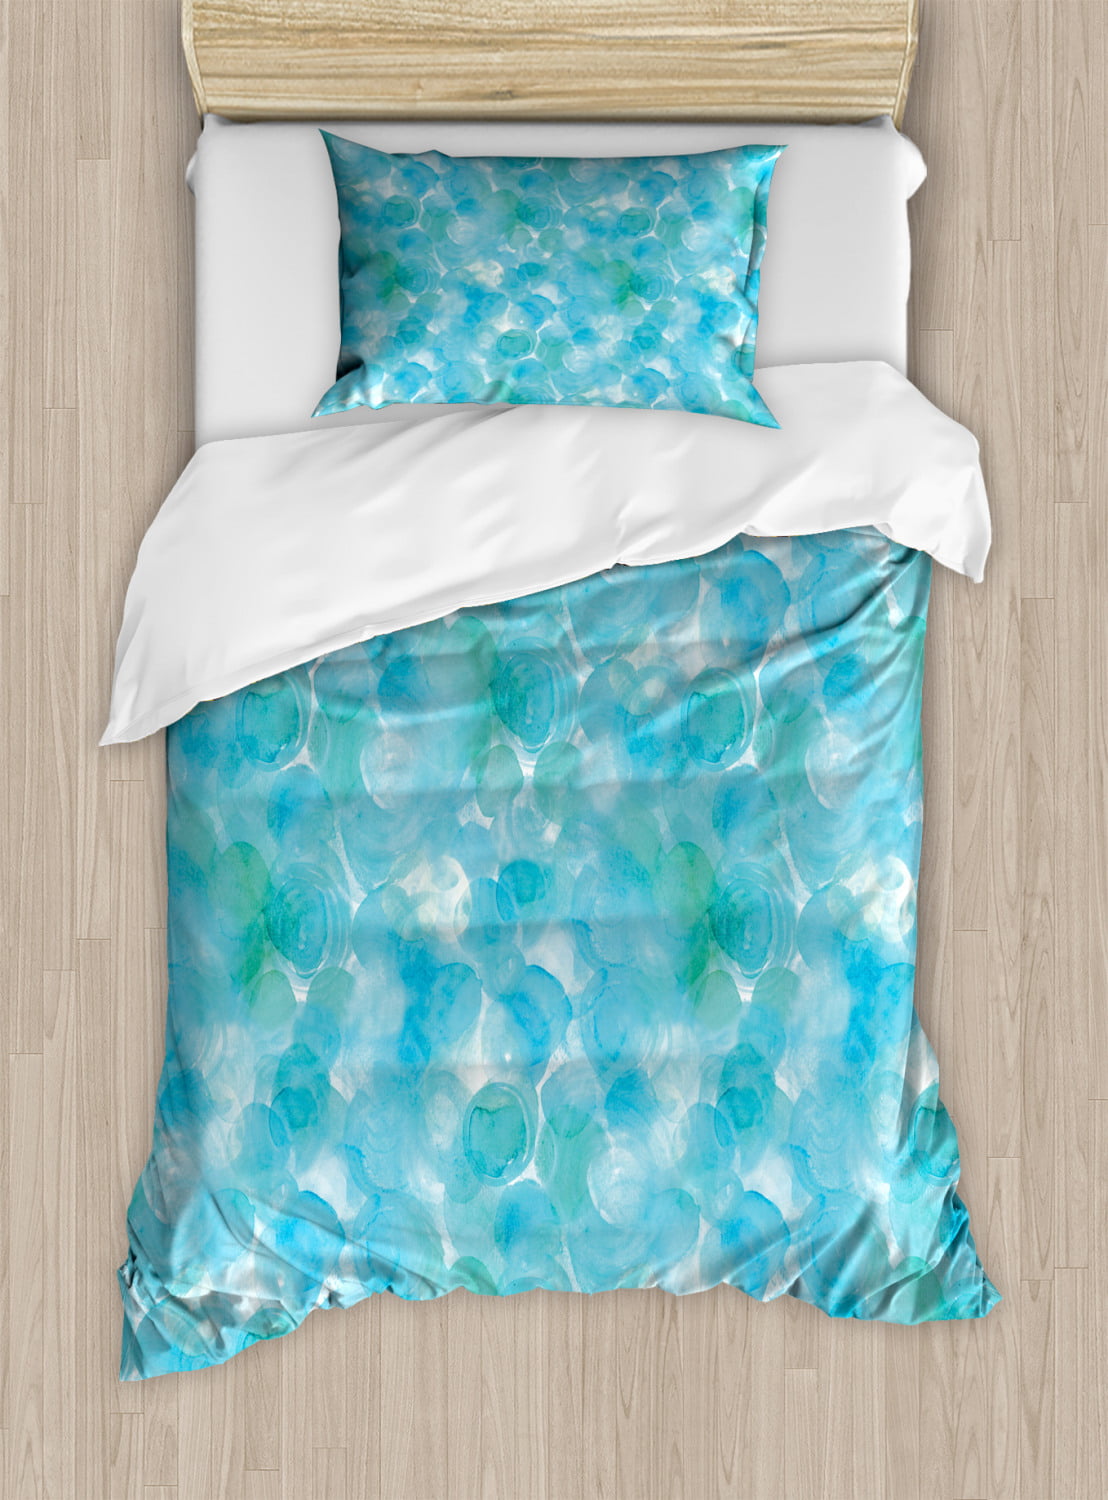 Ombre Print Abstract Blue Aqua Ocean Sea Libaoge 4 Piece Bed Sheets Set 1 Flat Sheet 1 Duvet Cover and 2 Pillow Cases